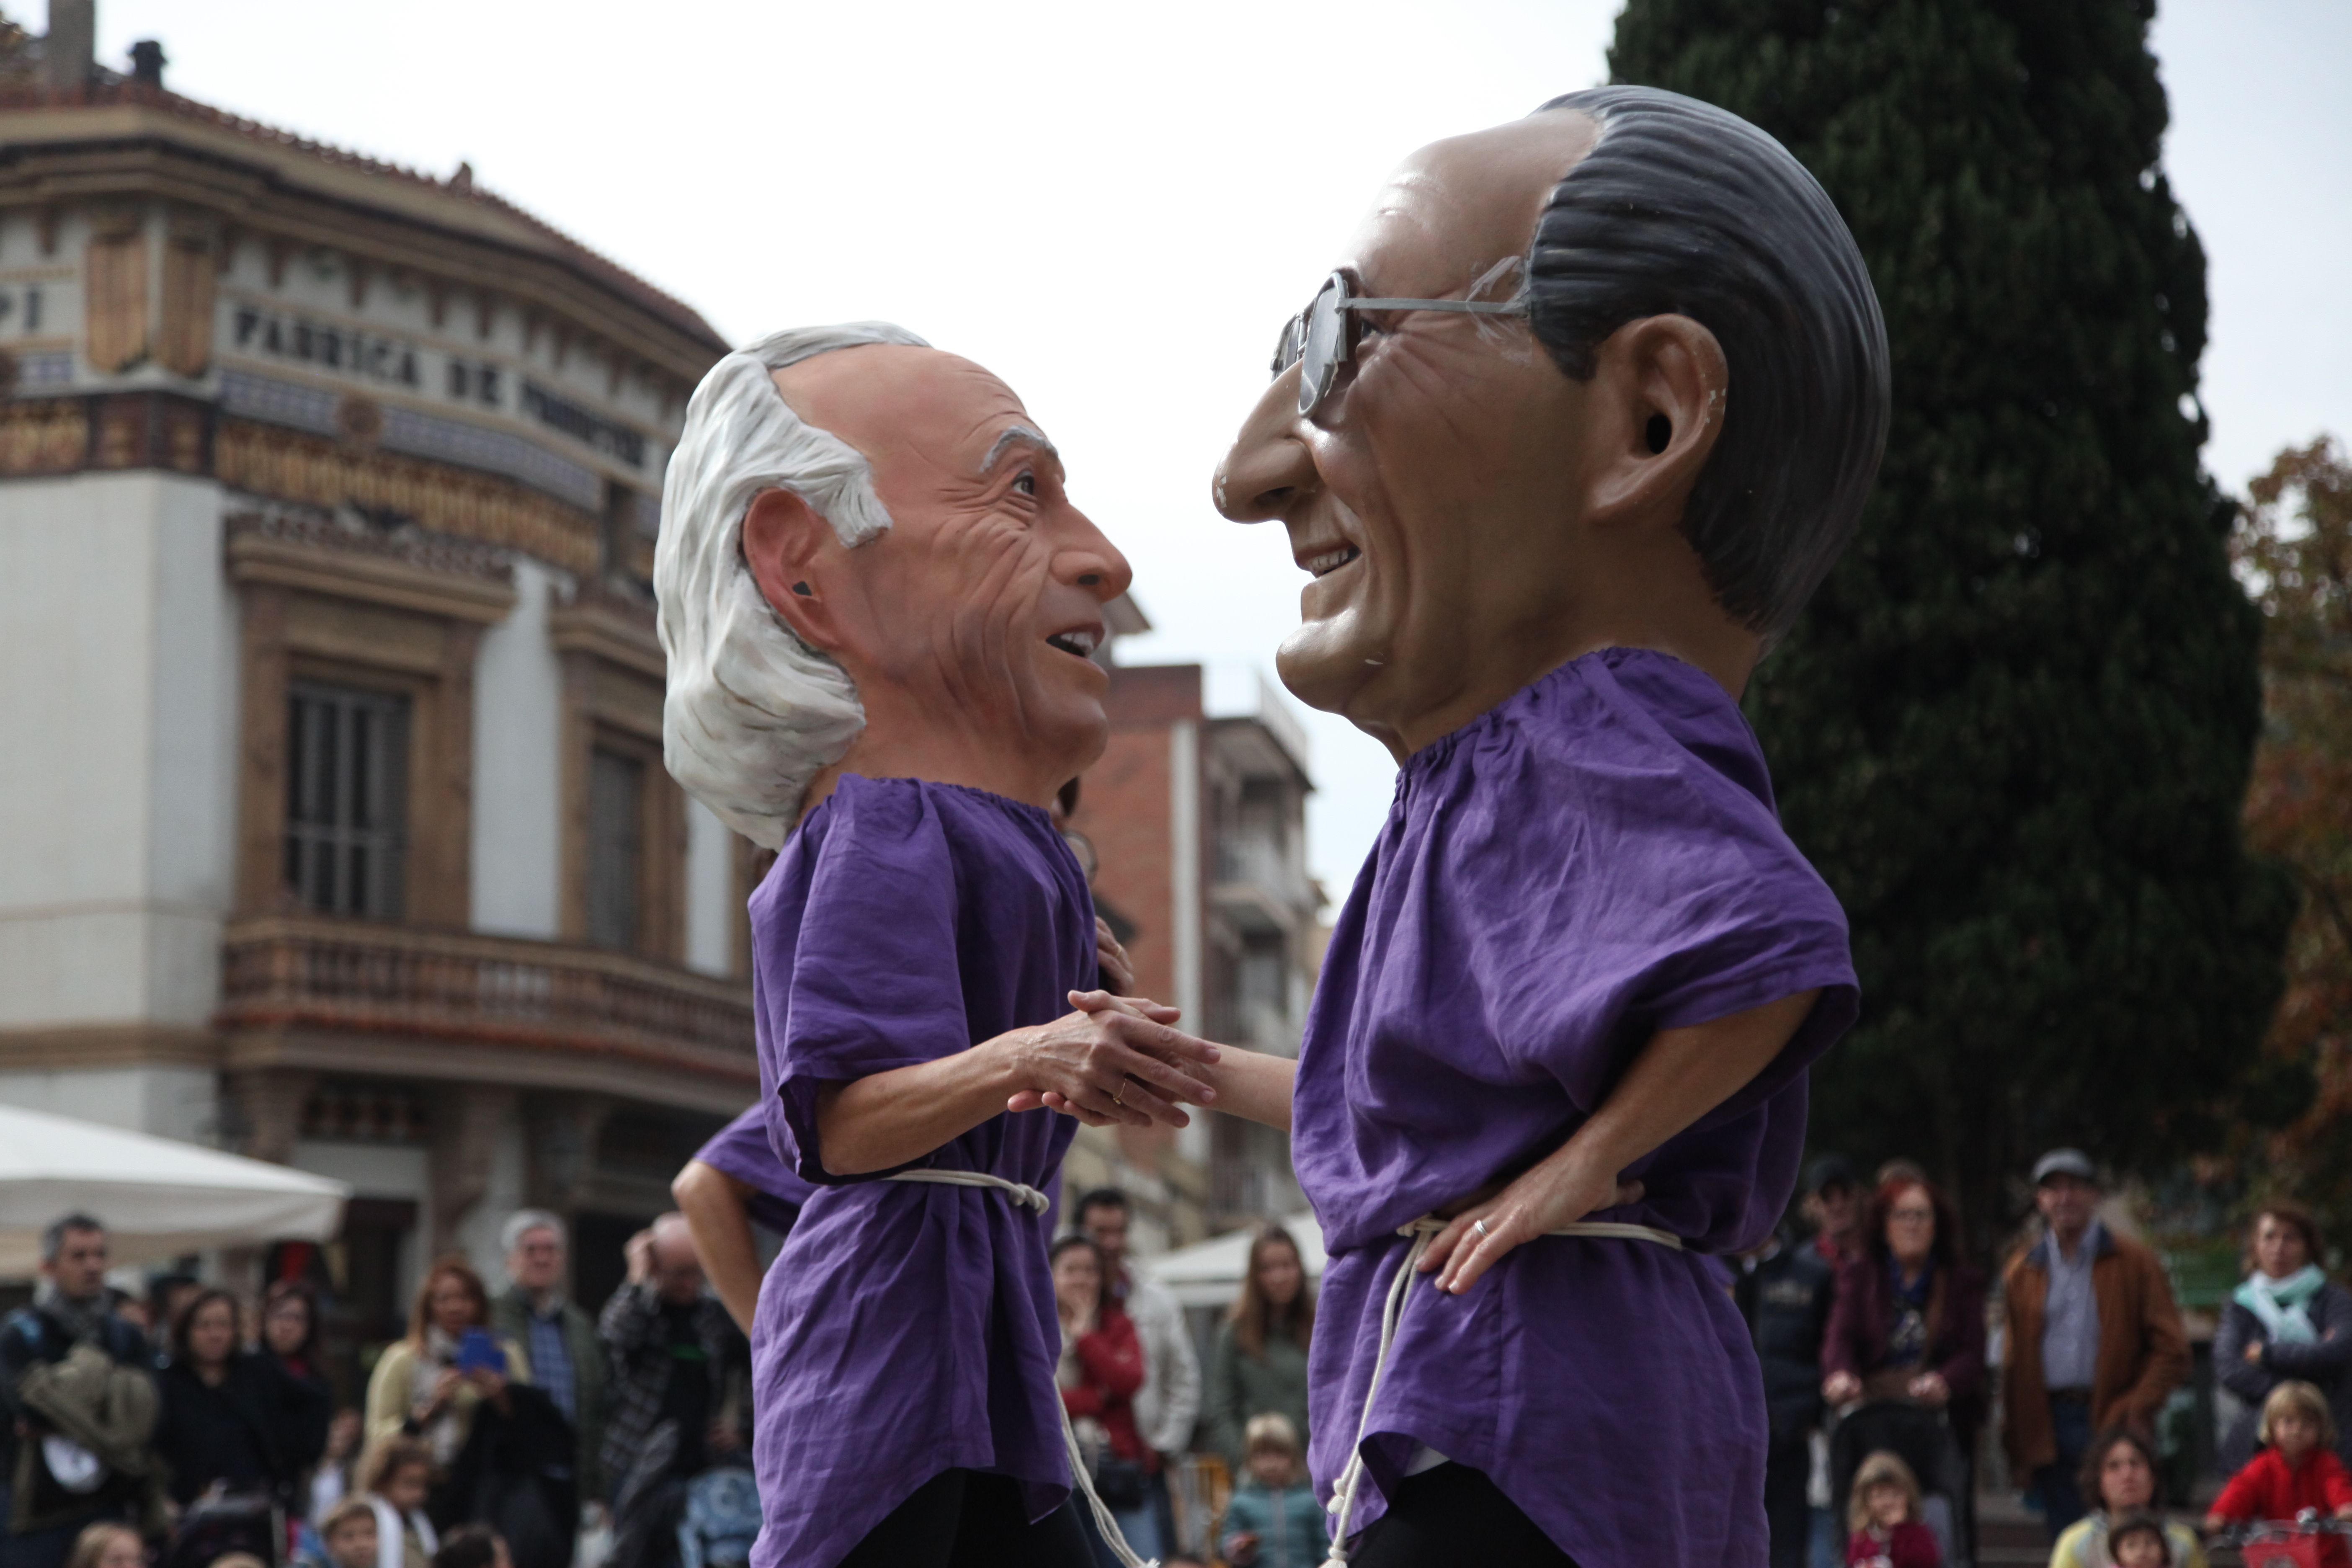 Els caparrots representen personatges populars del municipi  FOTO: Lali Puig